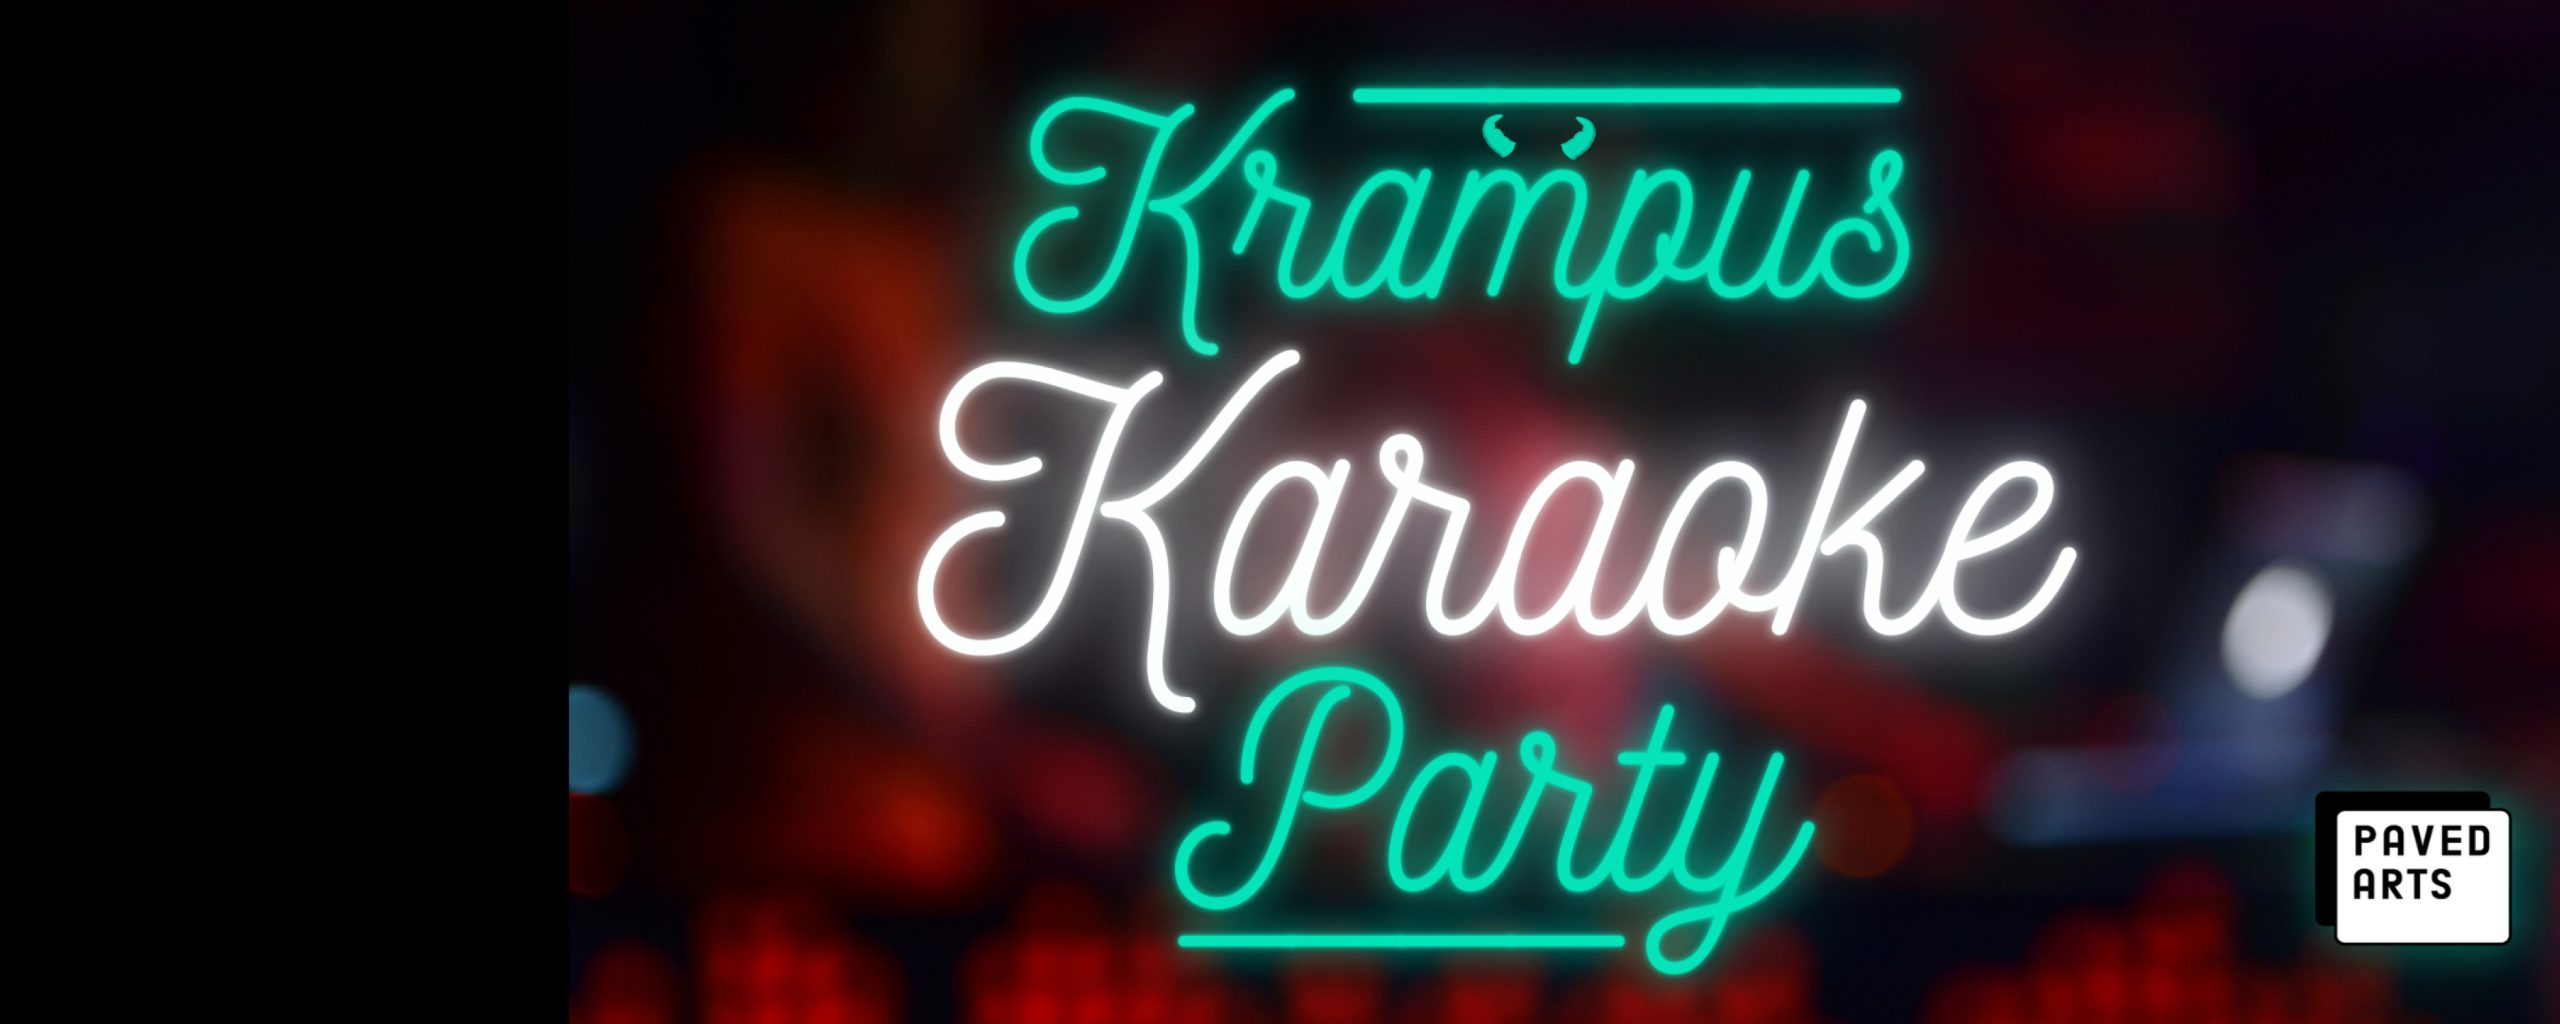 Krampus Karaoke Party!